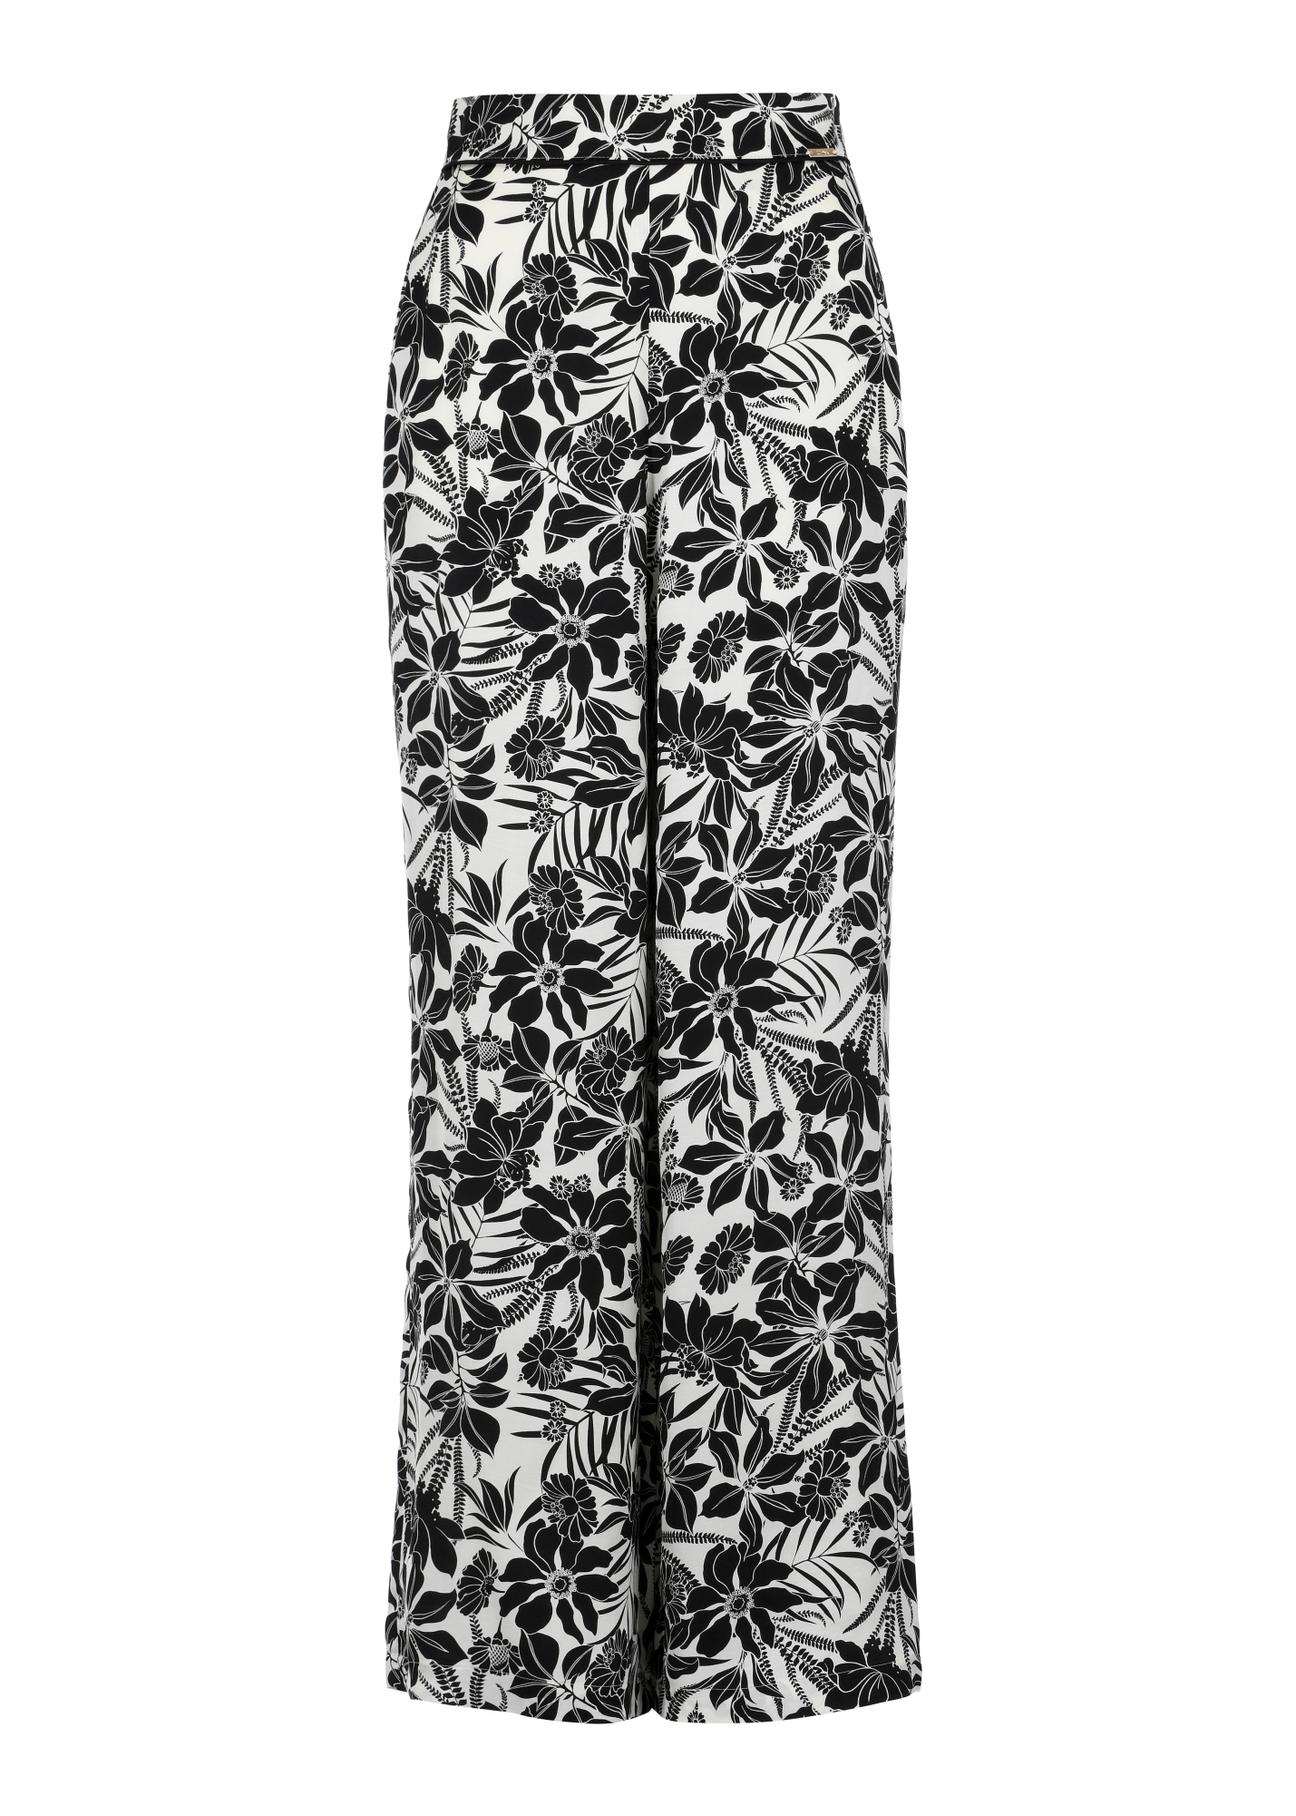 Zwiewne spodnie damskie w kwiatowy wzór SPODT-0092-12(W24)